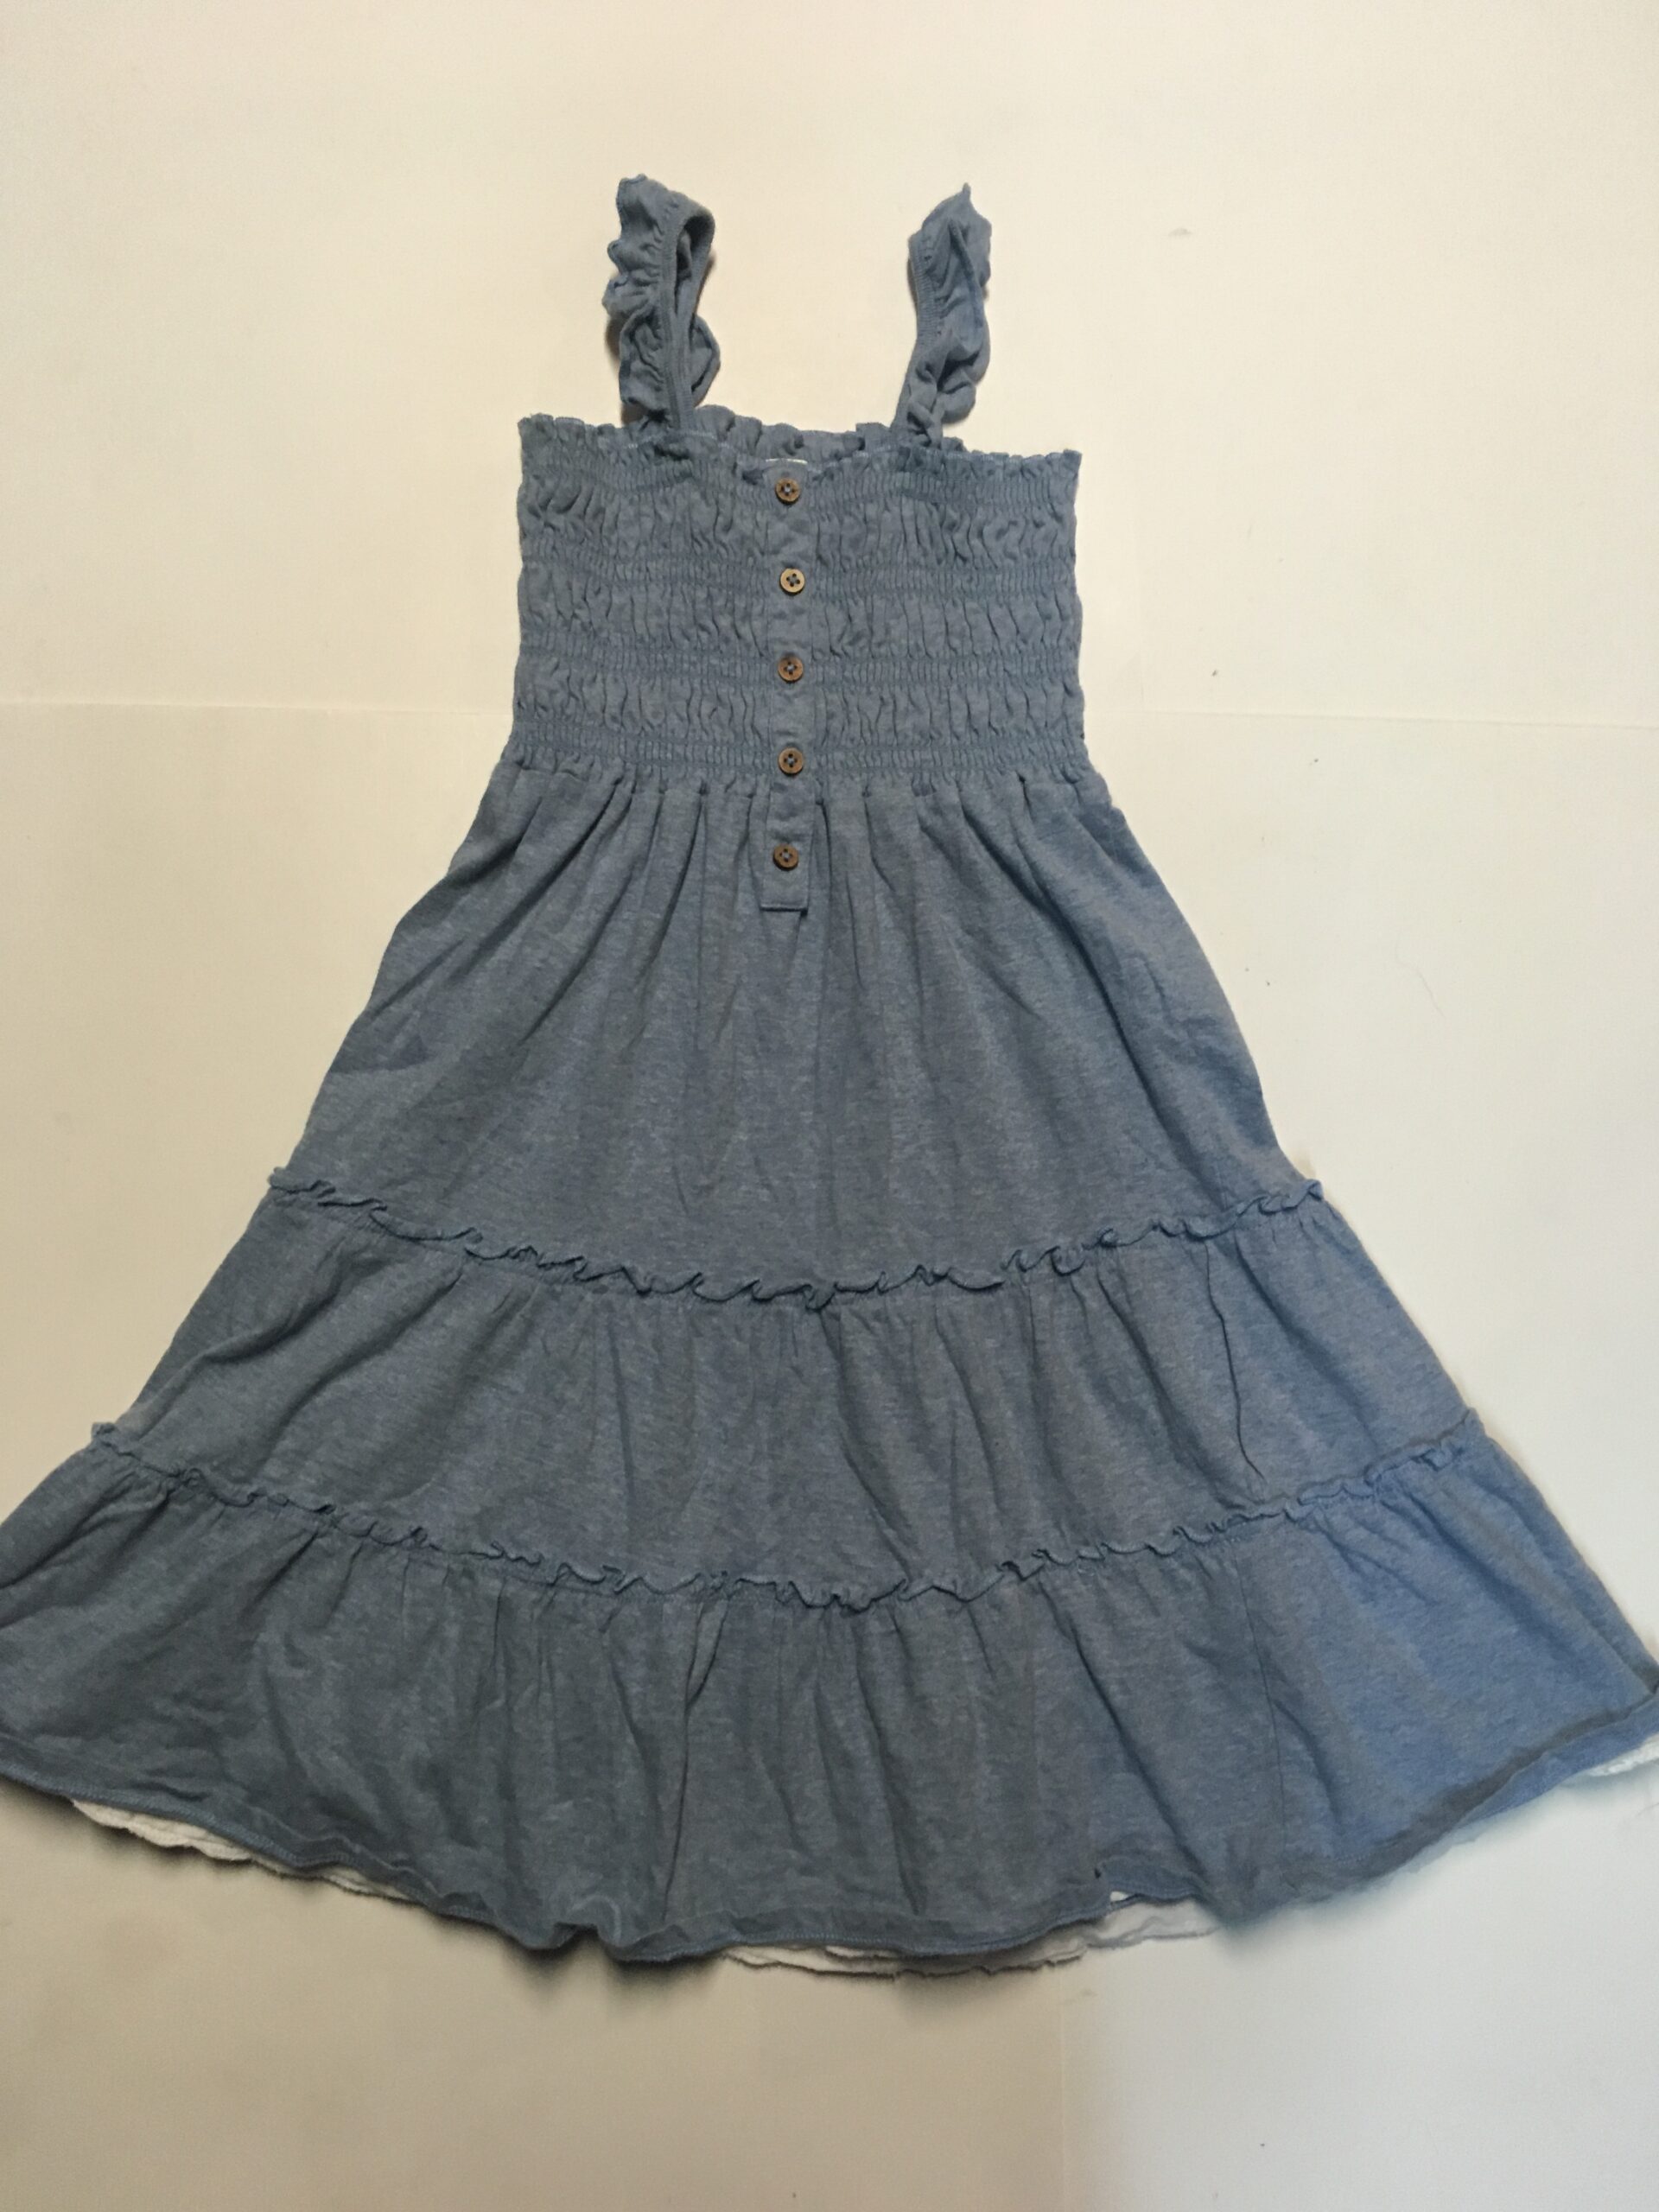 Tangerine Dress (size 8)  Strathroy Children's Wear